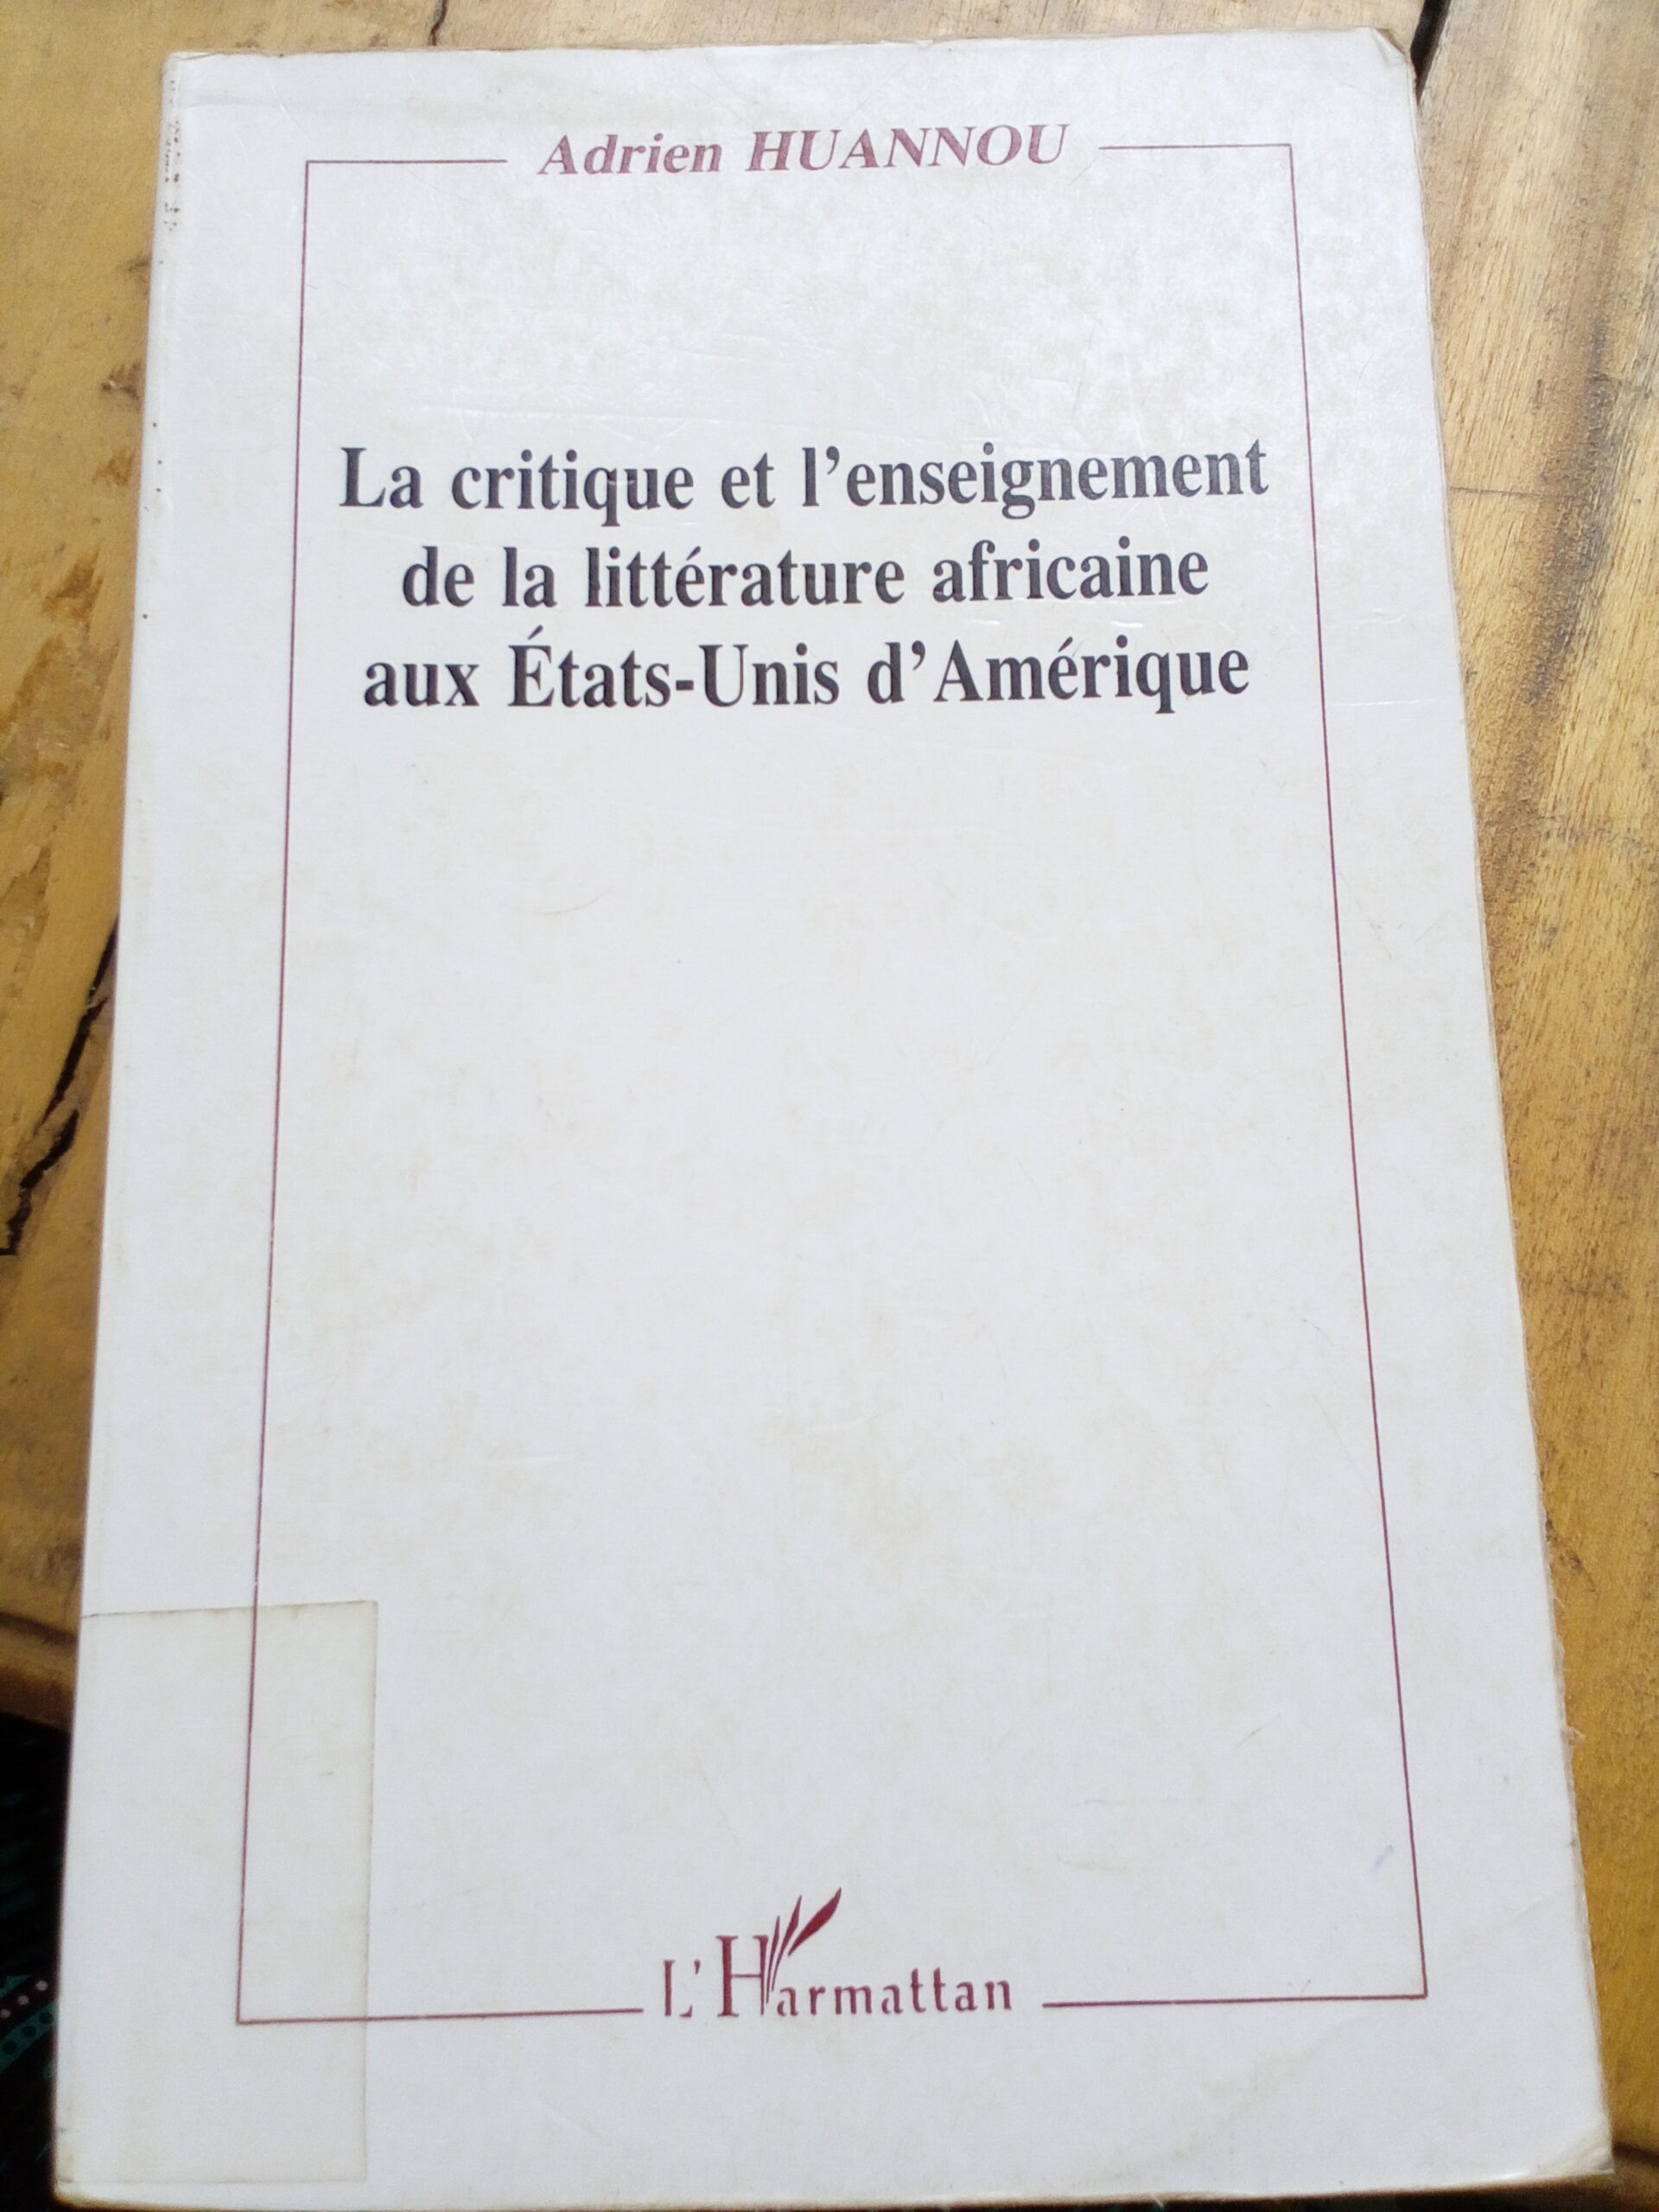 La critique et l’enseignement de la littérature africaine aux États-Unis d’Amérique d’Adrien HUANNOU